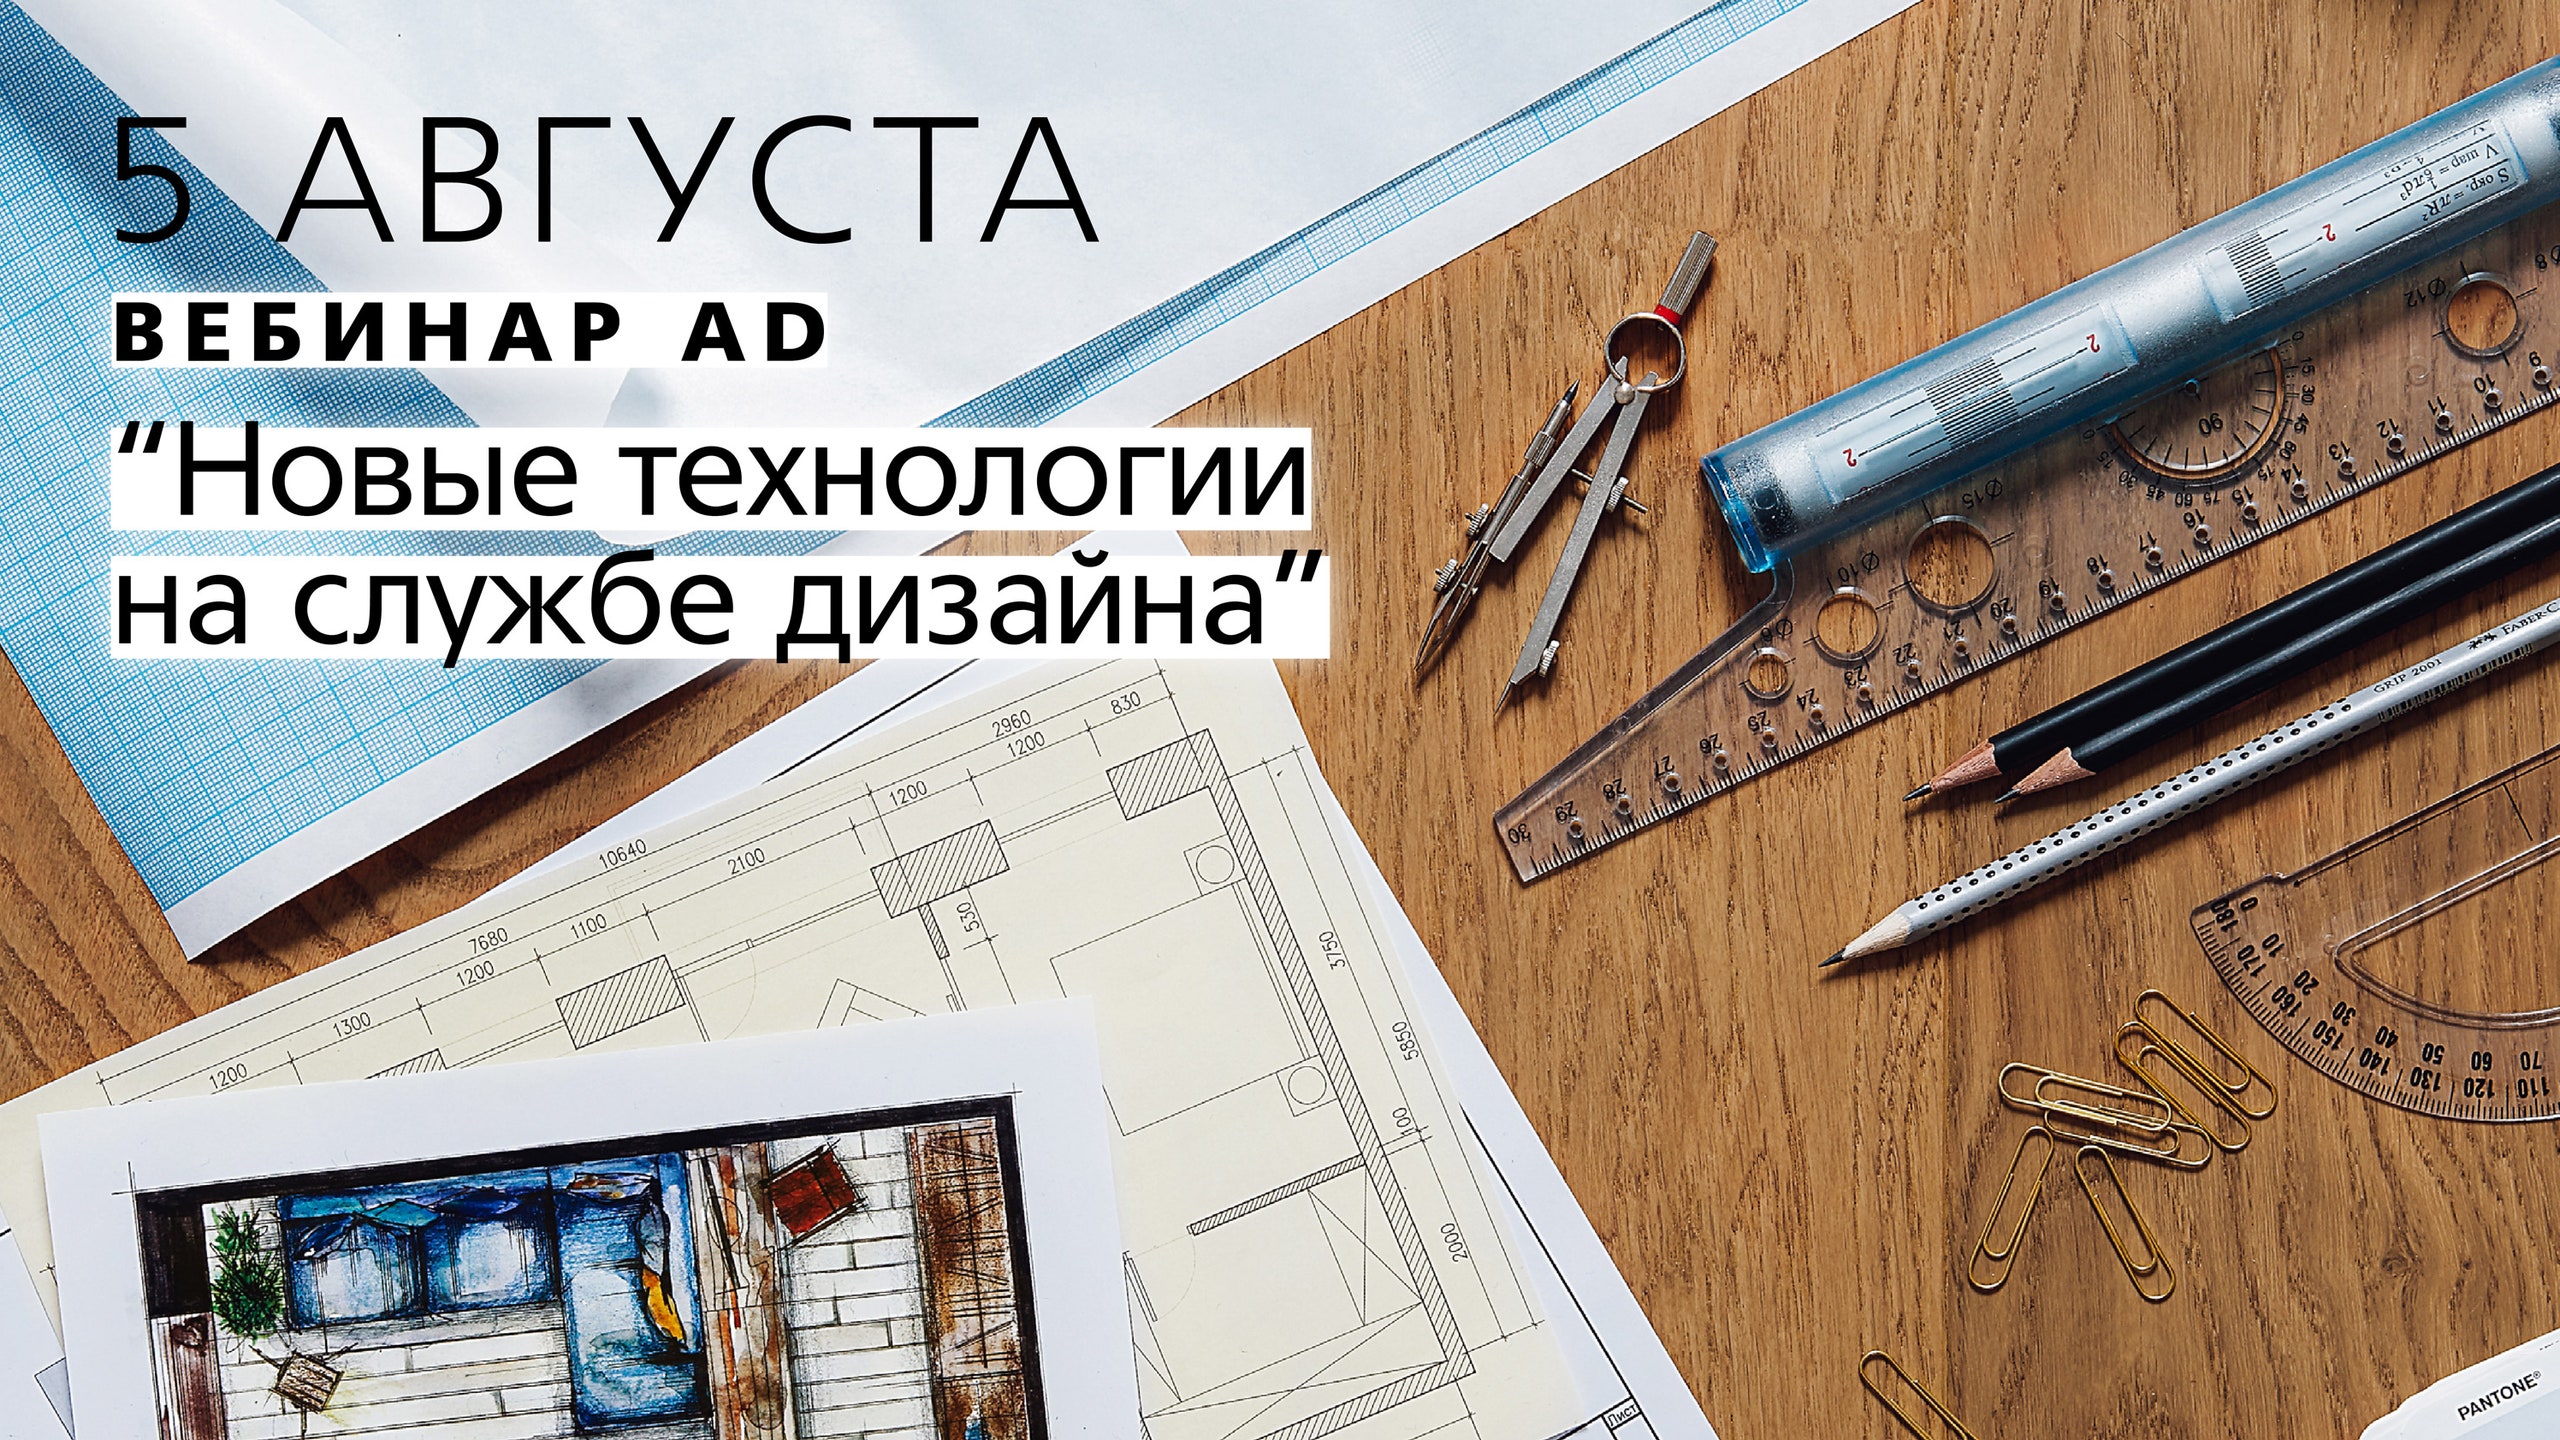 Новые технологии на службе дизайна бесплатный вебинар от главного редактора AD Анастасии Ромашкевич